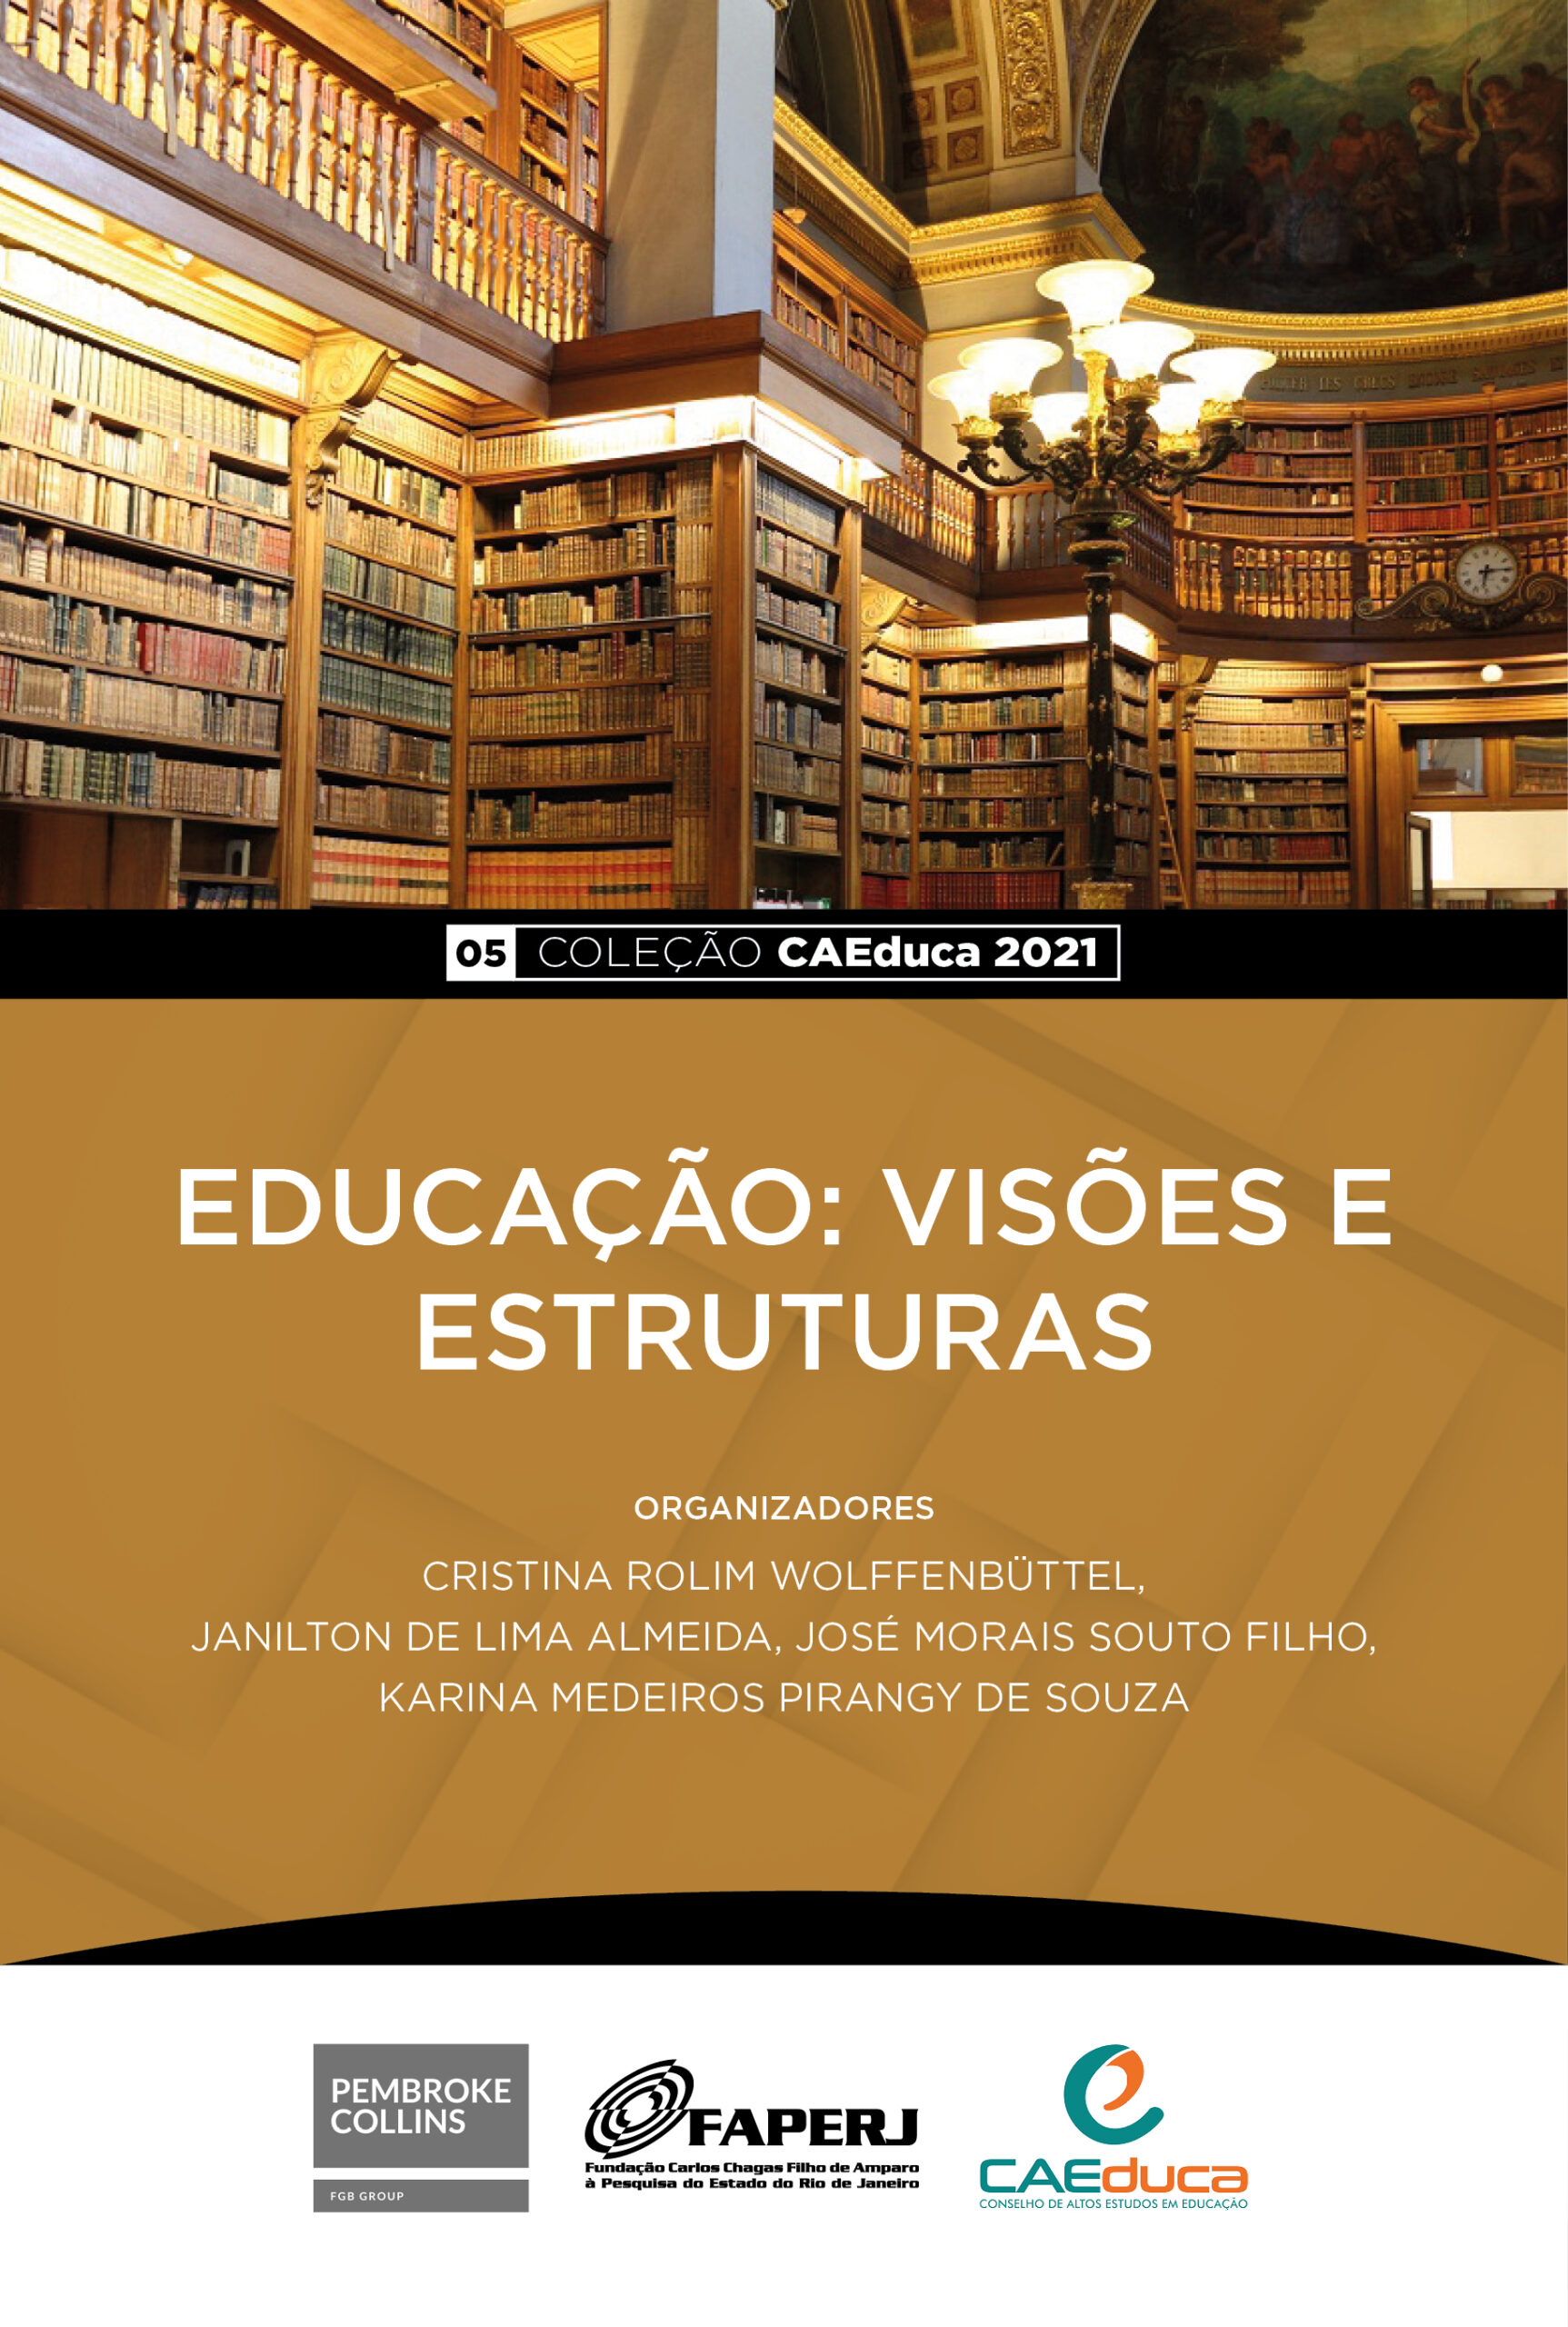 CAEDUCA-05- 2021-Educação Visões e Estrutura_CAED-Jus